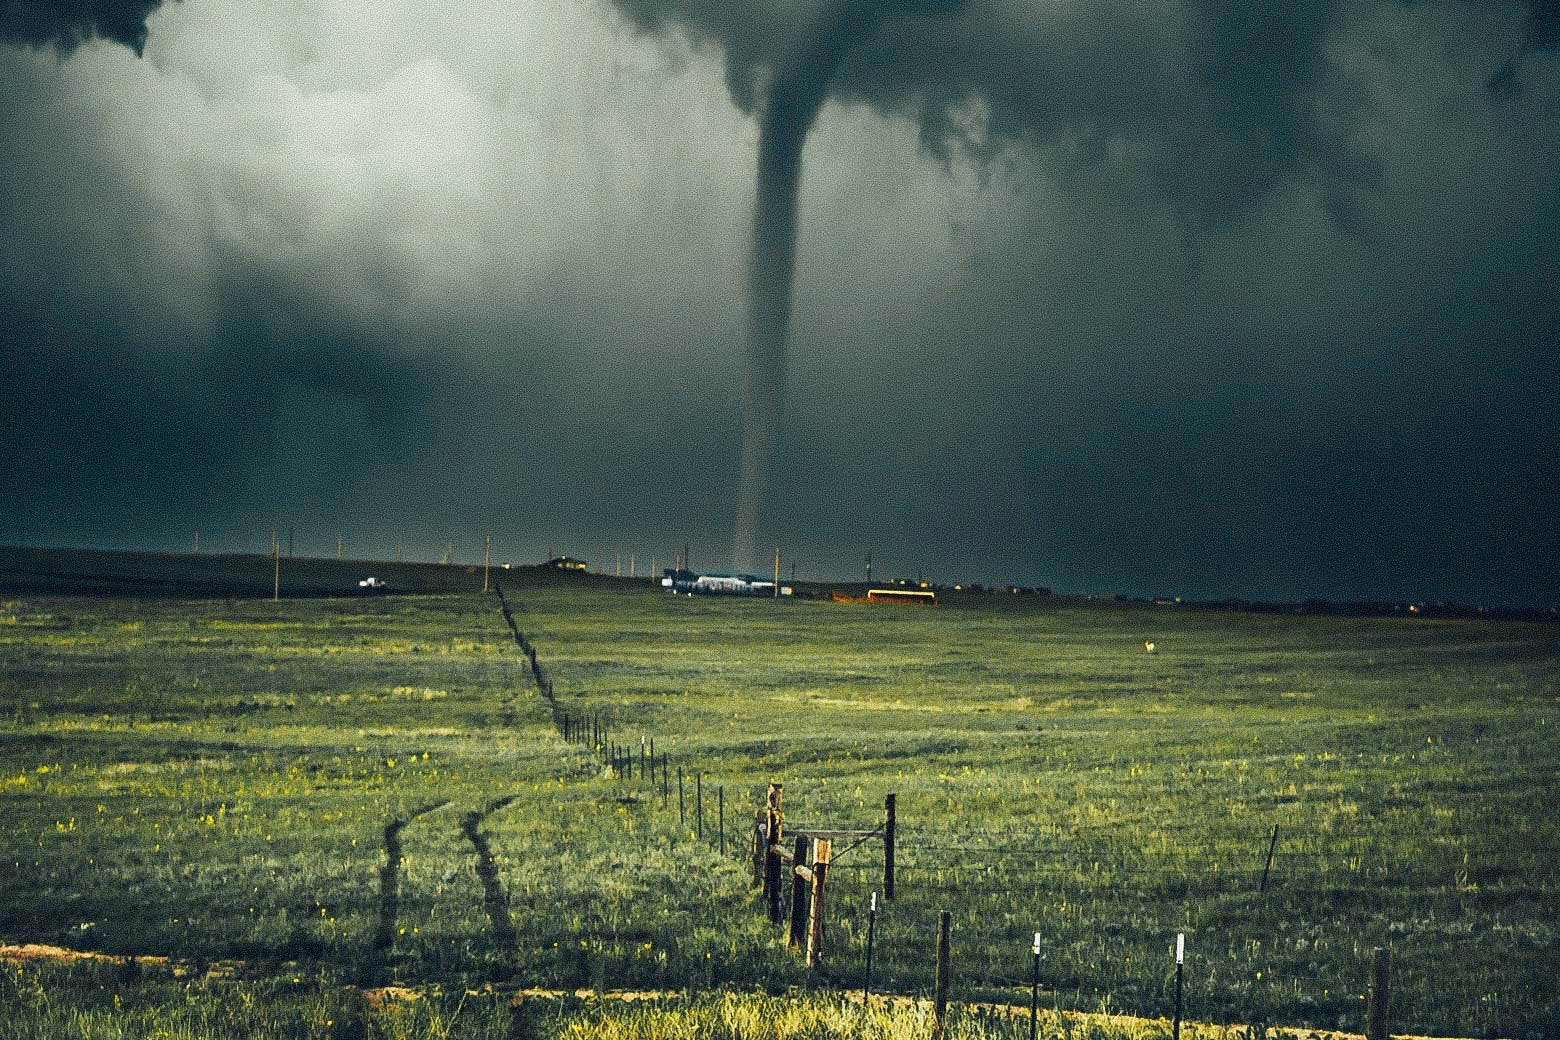 A tornado touches down near a field.